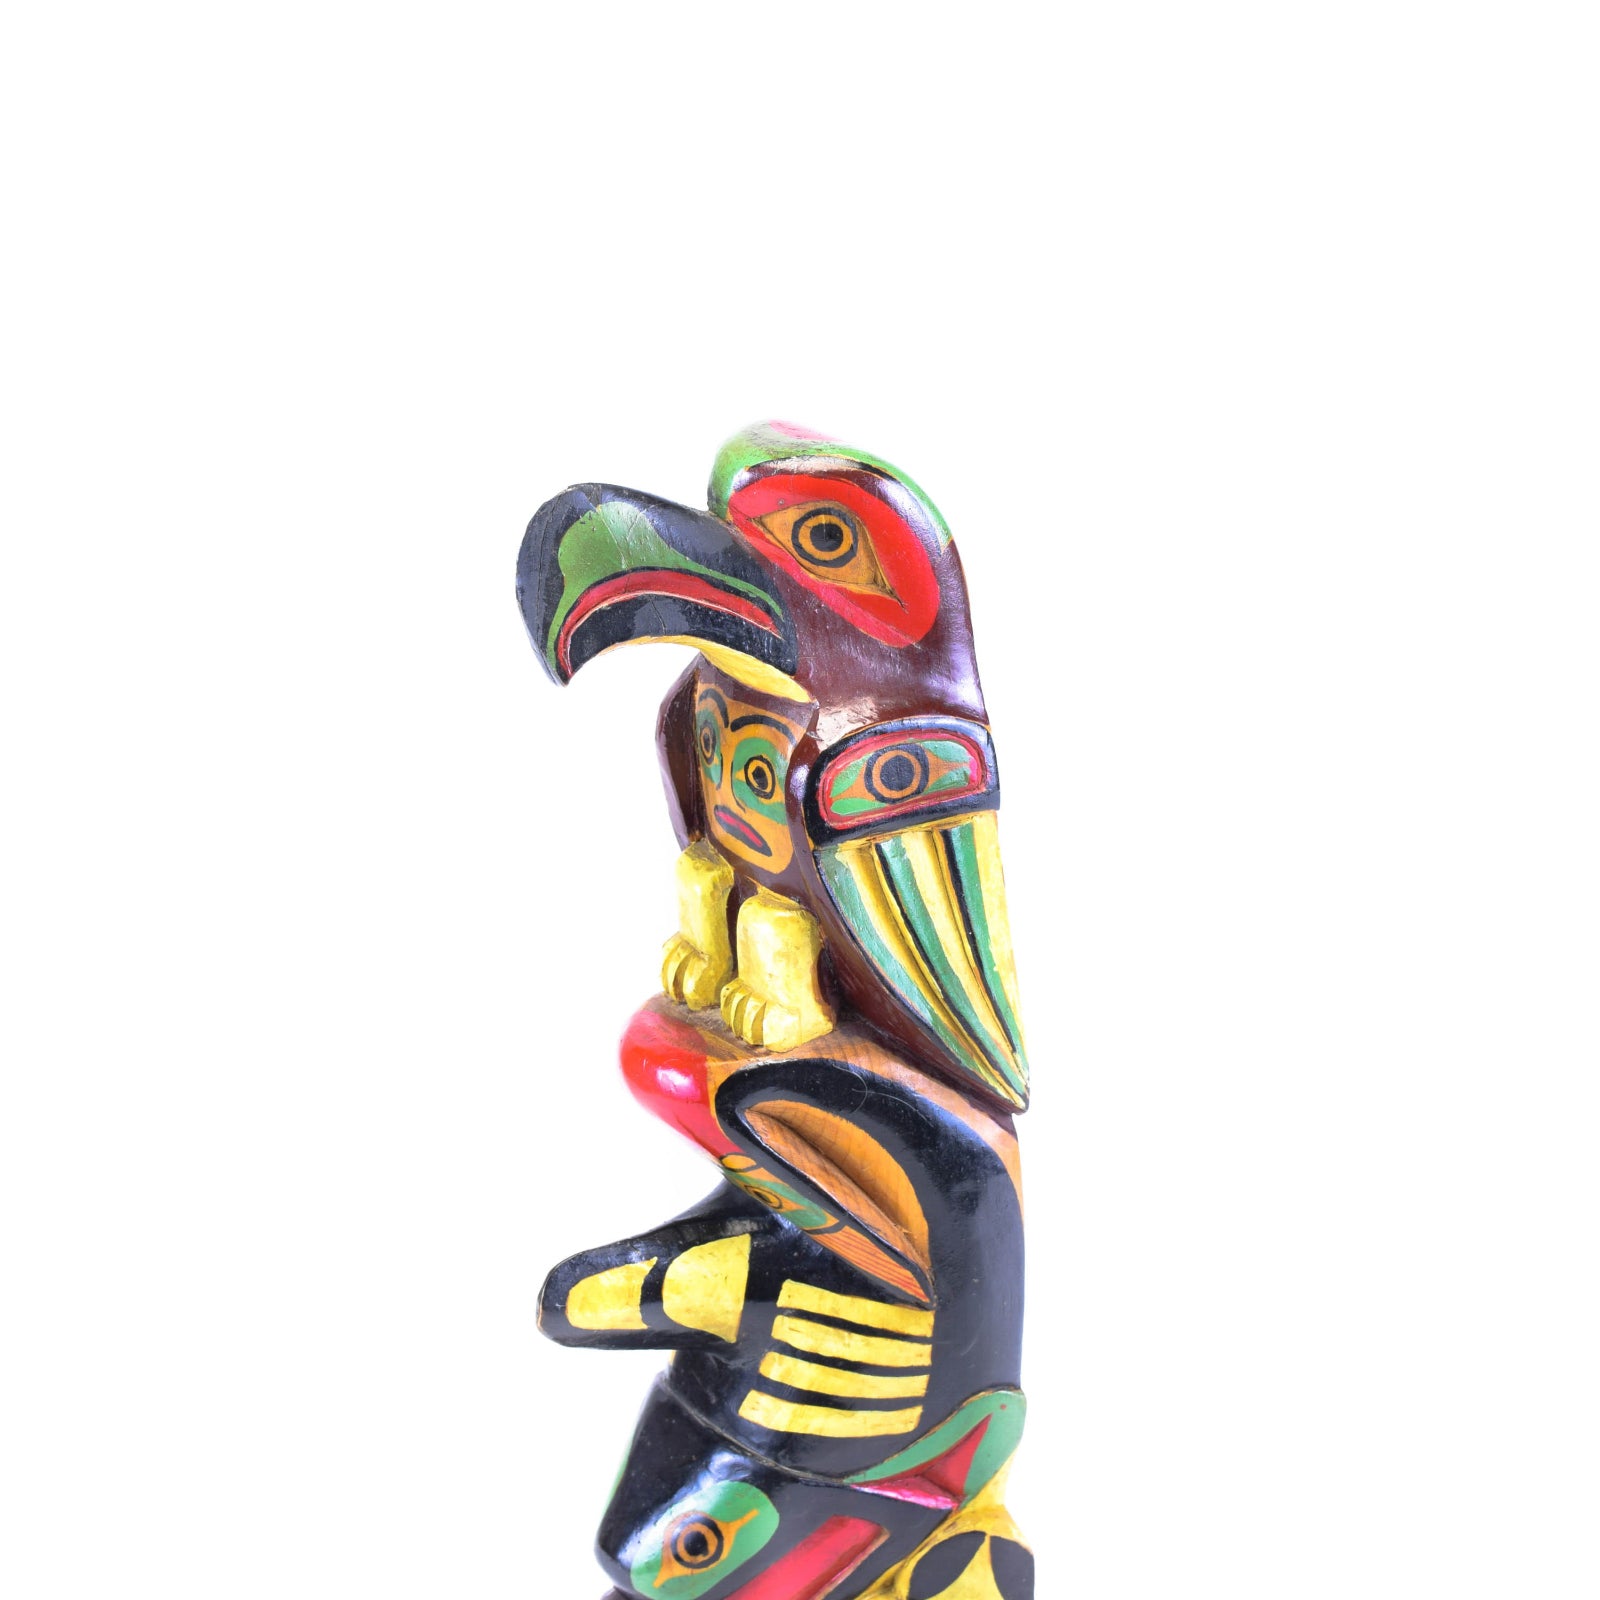 Nuu-chah-nulth Three Figure Totem